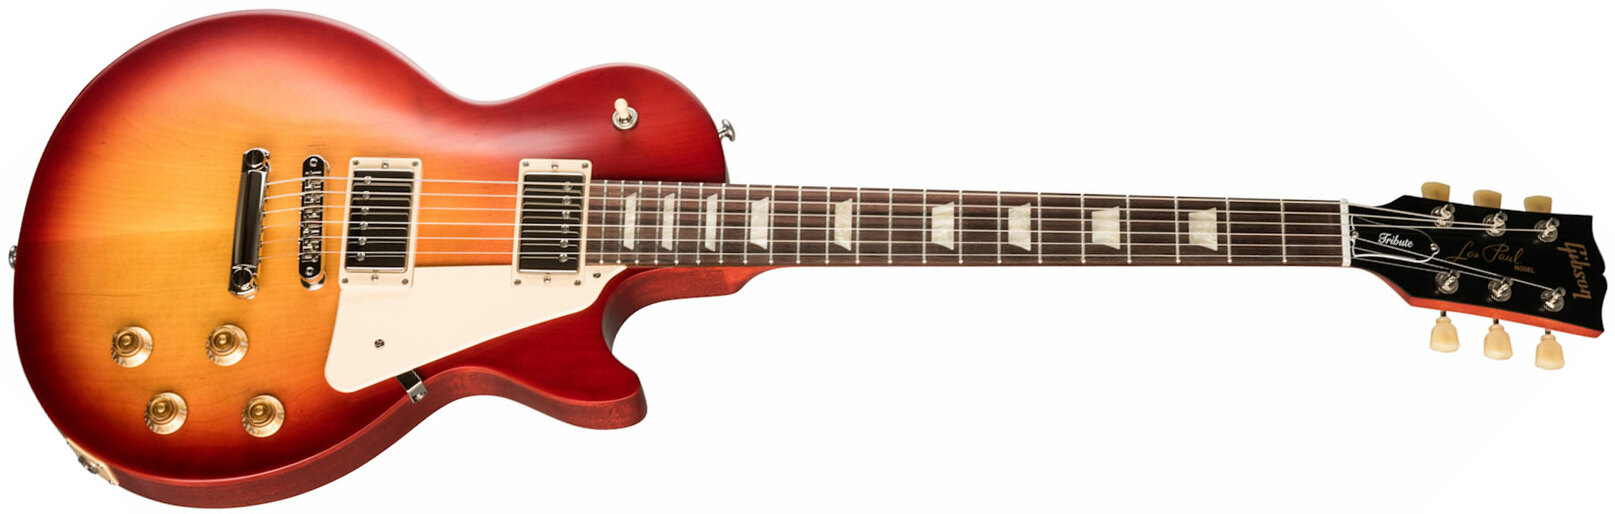 Gibson Les Paul Tribute Modern 2h Ht Rw - Satin Cherry Sunburst - Guitare Électrique Single Cut - Main picture